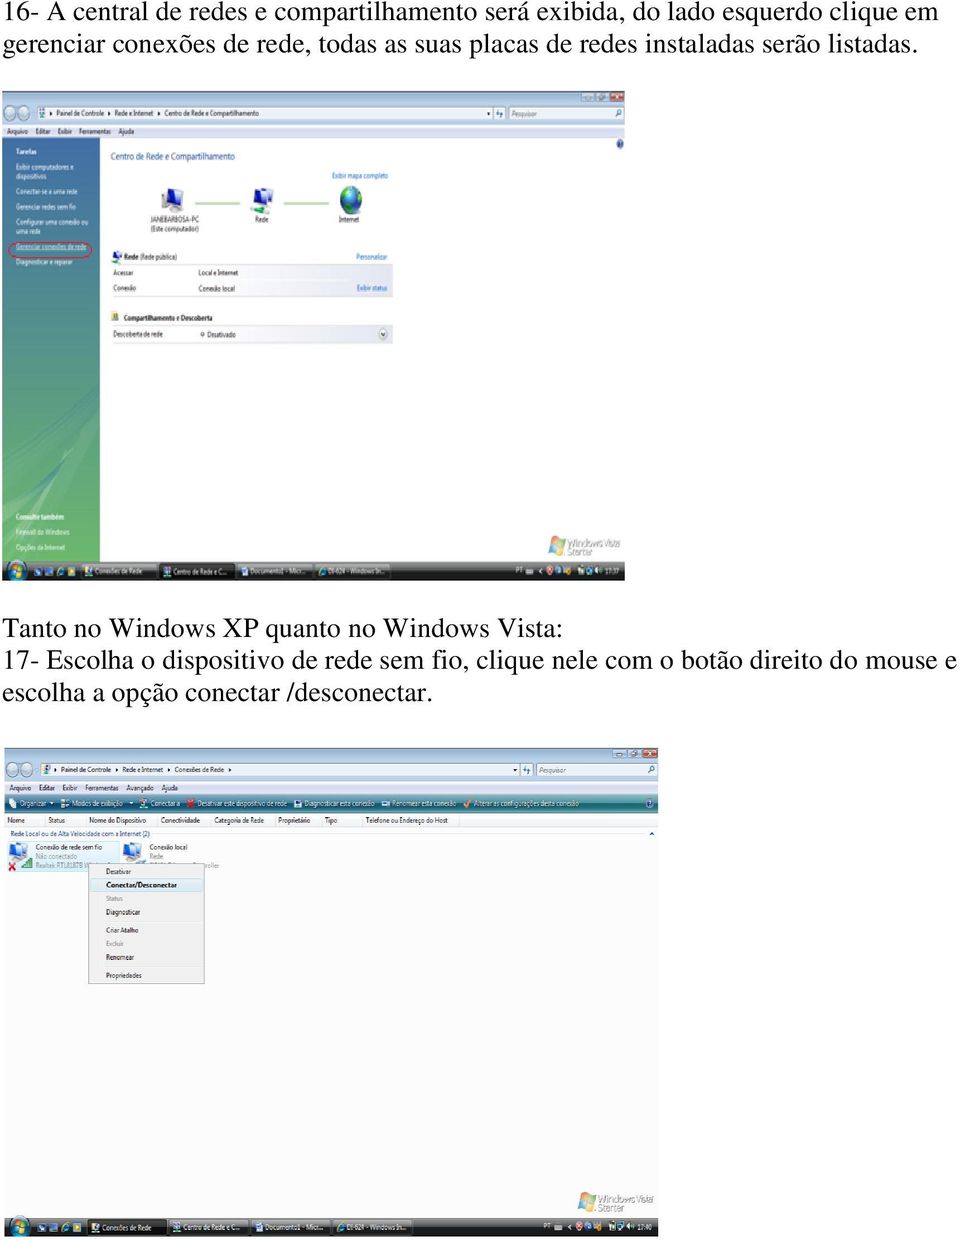 Tanto no Windows XP quanto no Windows Vista: 17- Escolha o dispositivo de rede sem